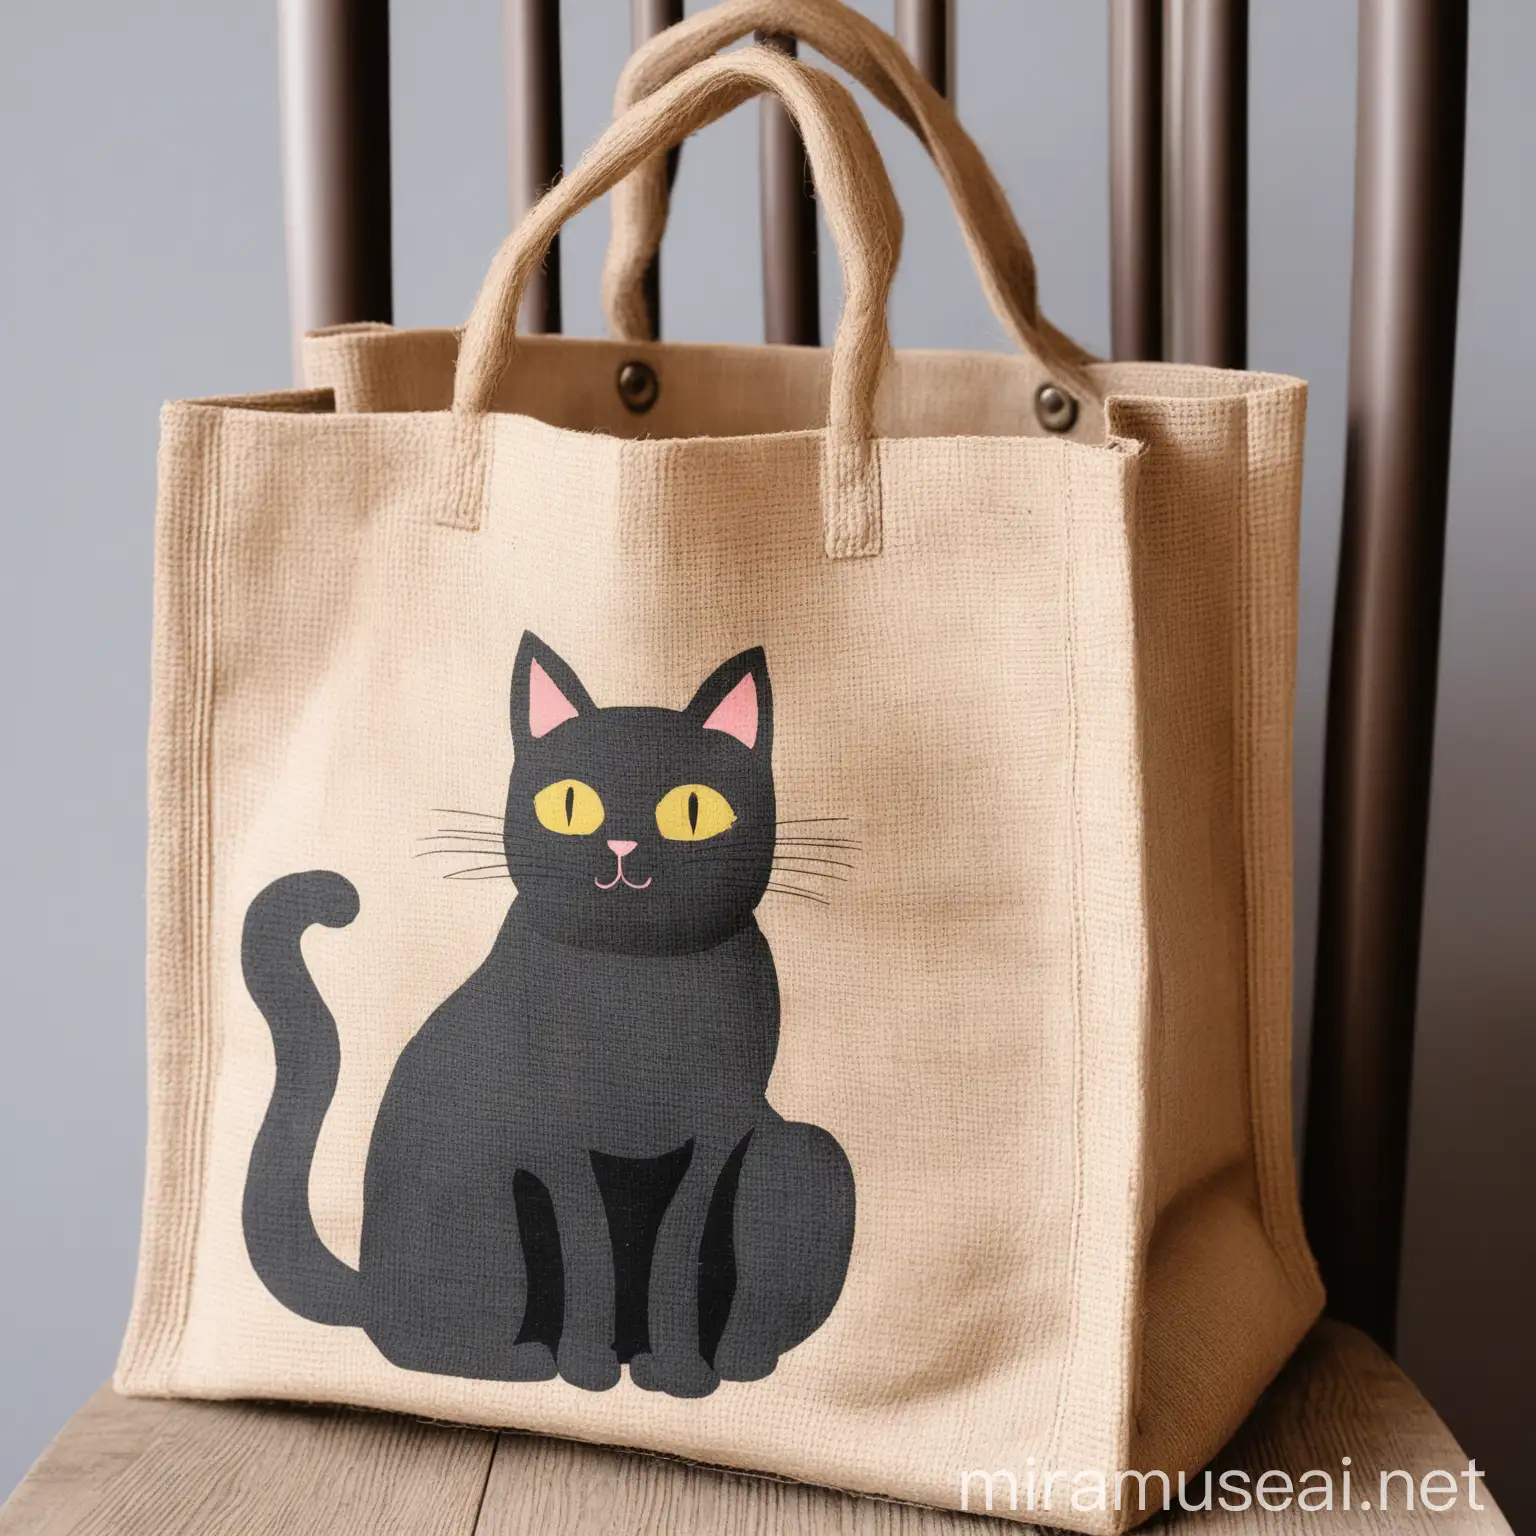 Adorable Cat in Jute Bag